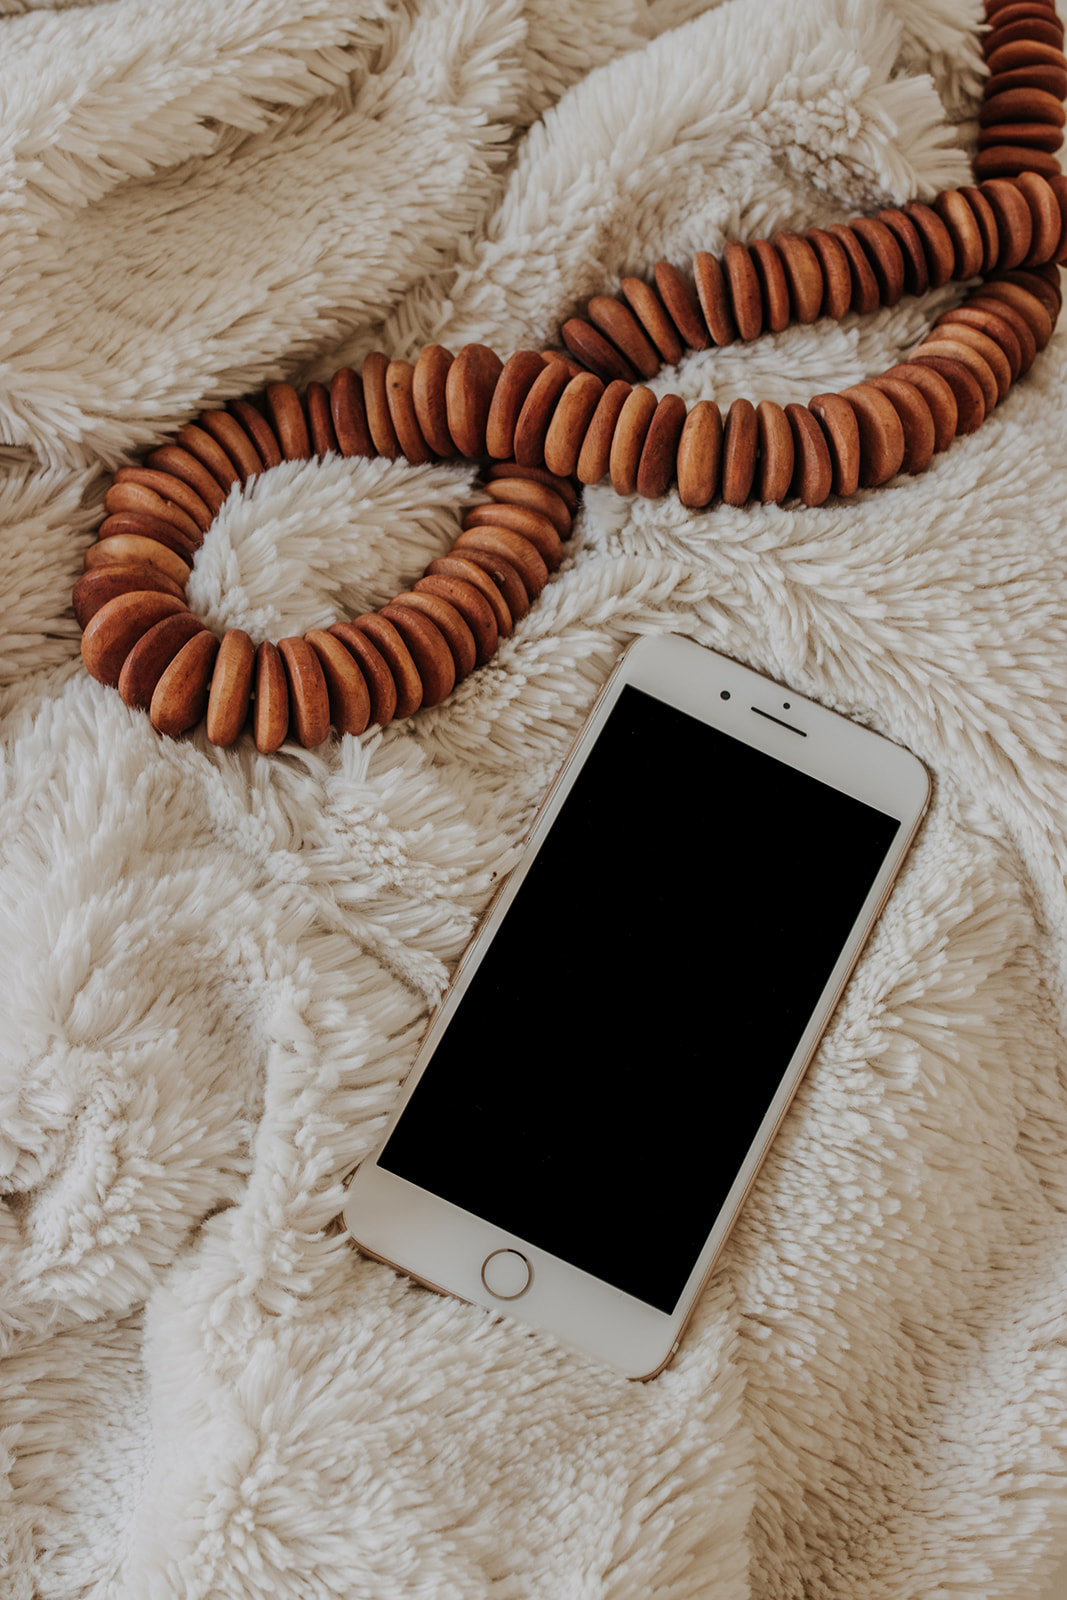 iphone on cozy blanket